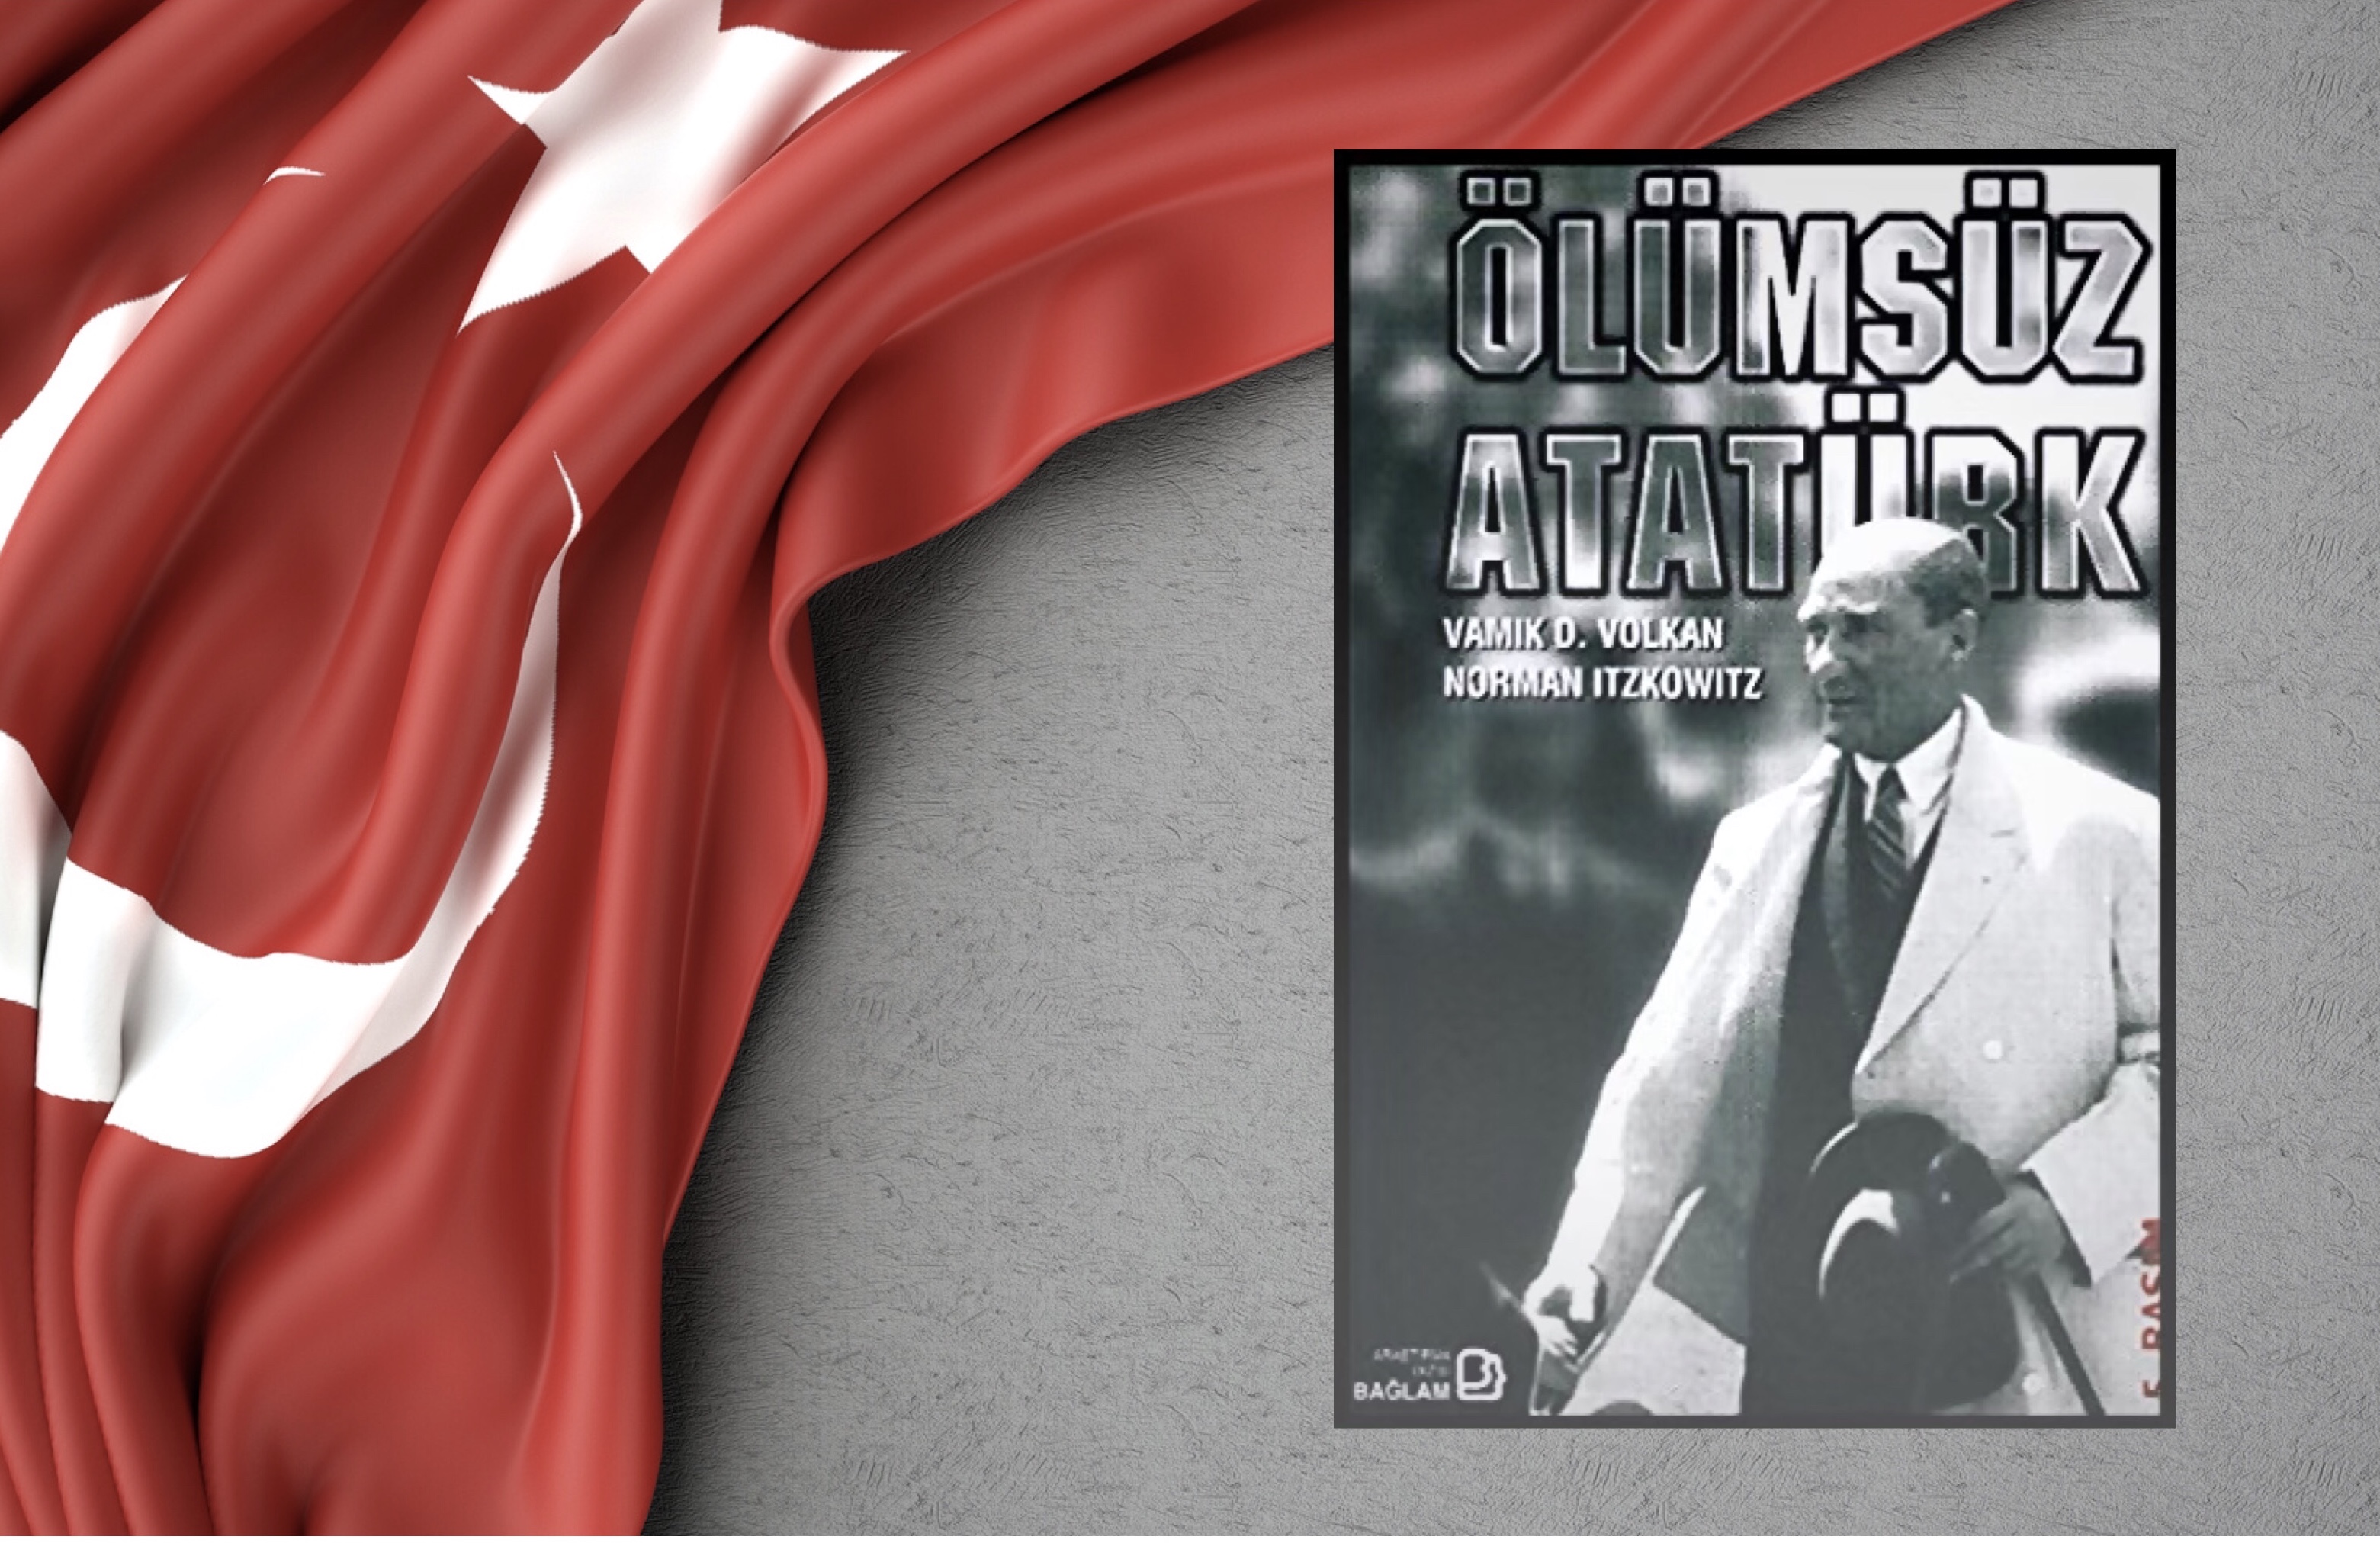 Kitap: Ölümsüz Atatürk | Yazar: Vamık D. Volkan - Norman Itzkowitz | Yorumlayan: Hülya Erarslan